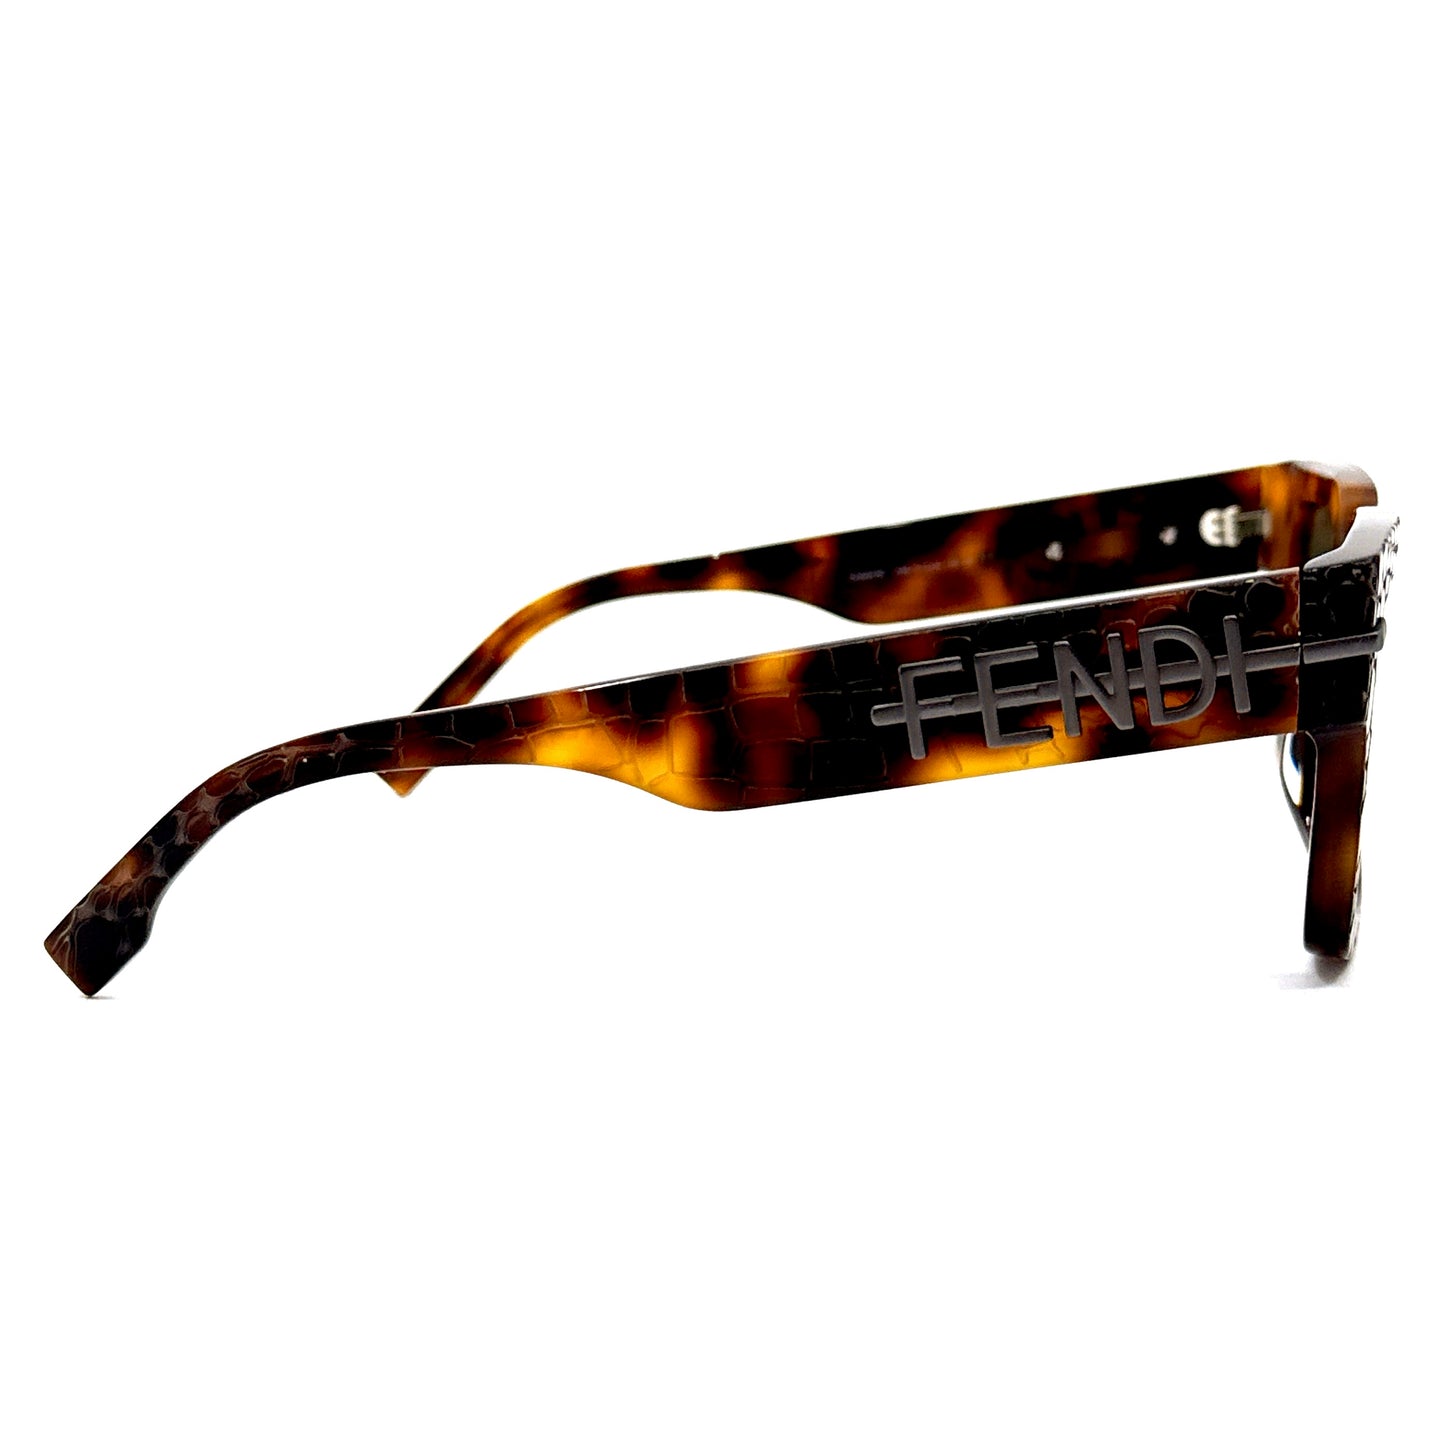 FENDI Sunglasses FE40078I 52N